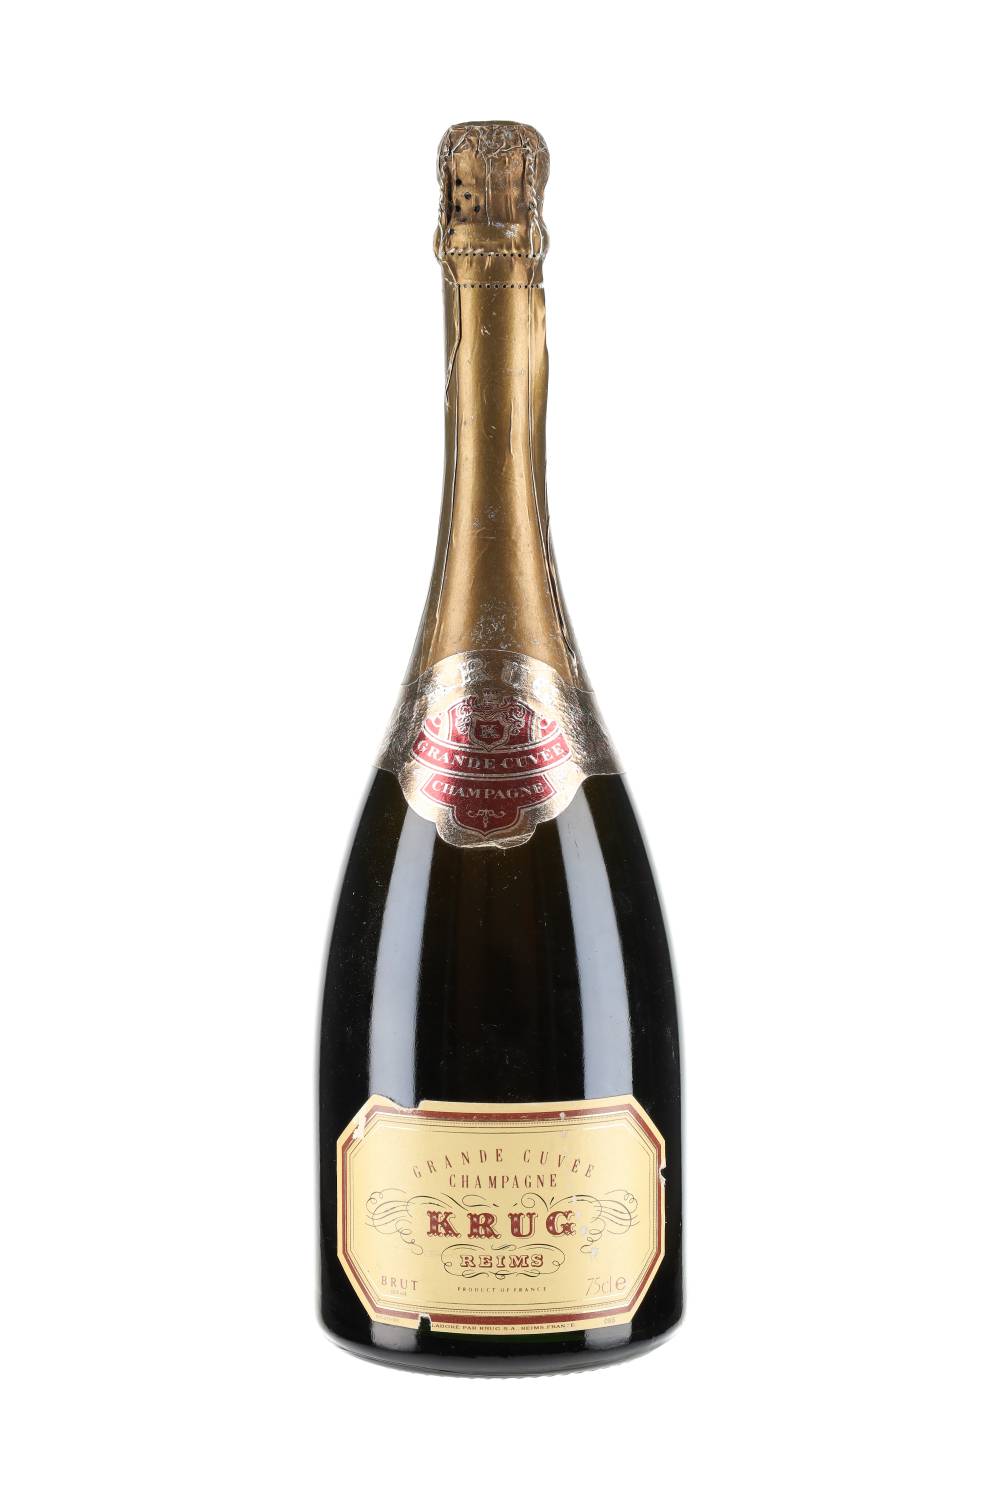 Krug Champagne Grande Cuvée Brut 2nd Edition NV – Total Grand Cru